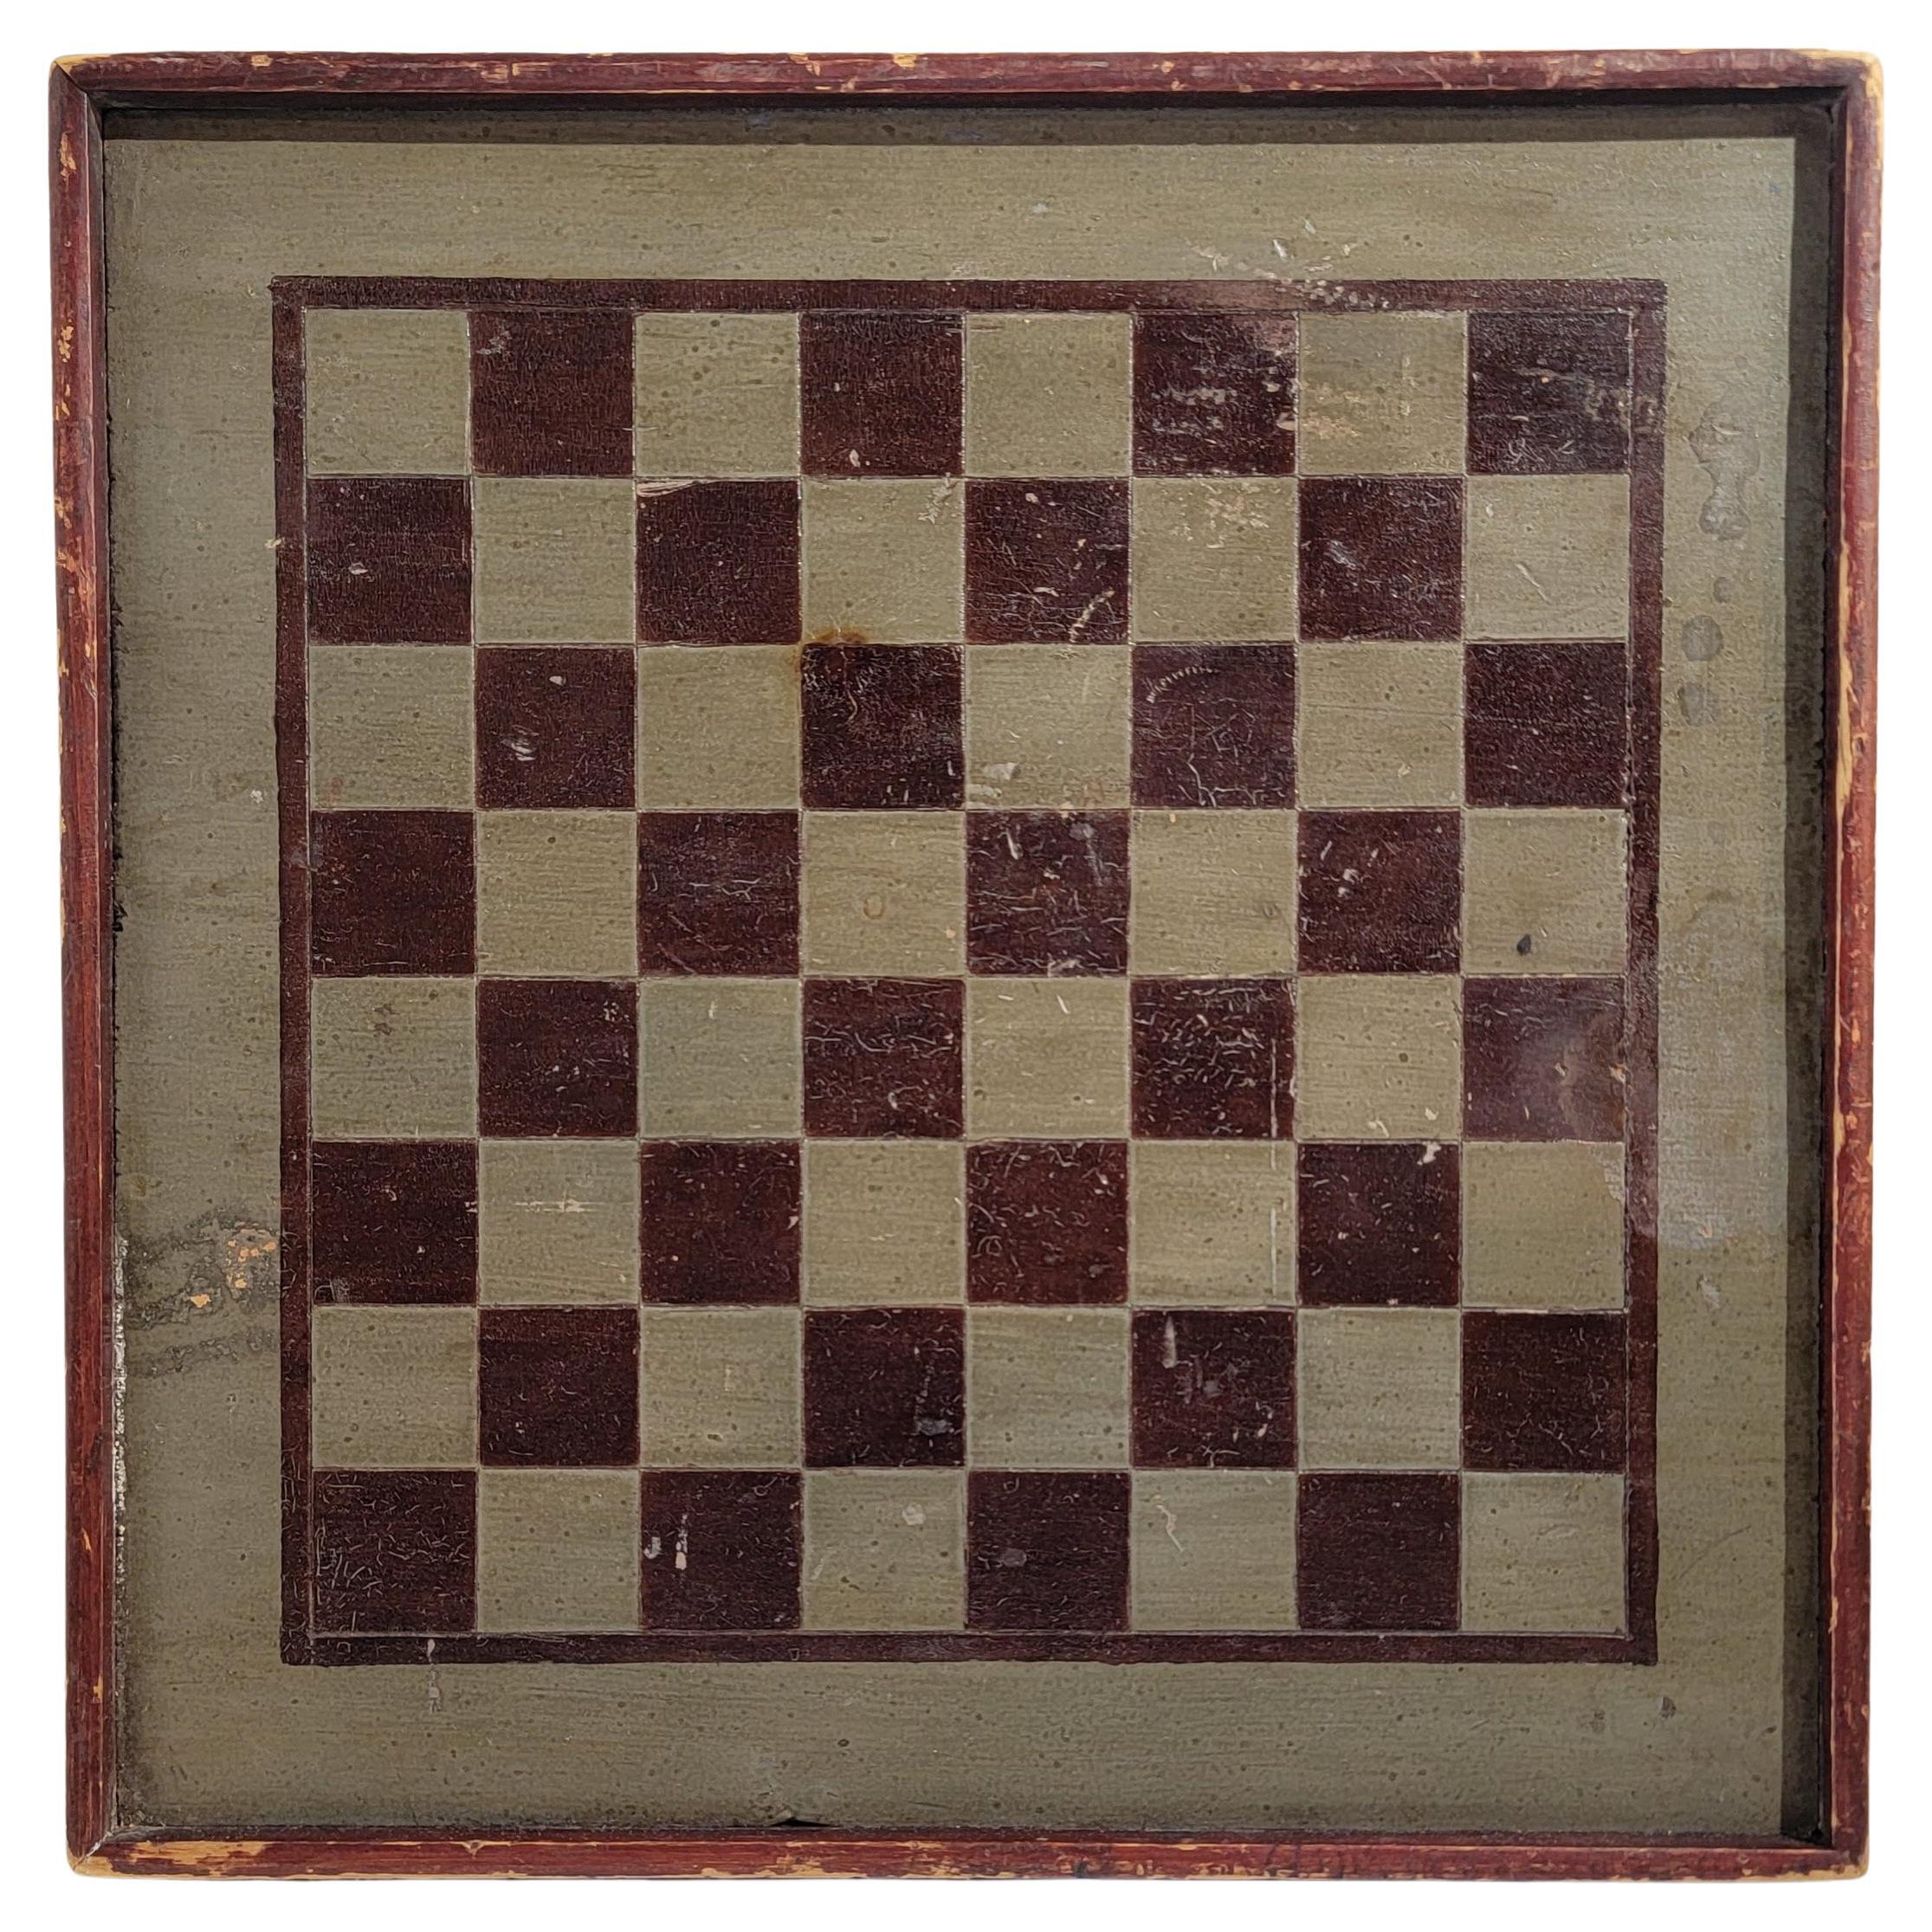 Planche de jeu originale du 19ème siècle peinte en vert et marron